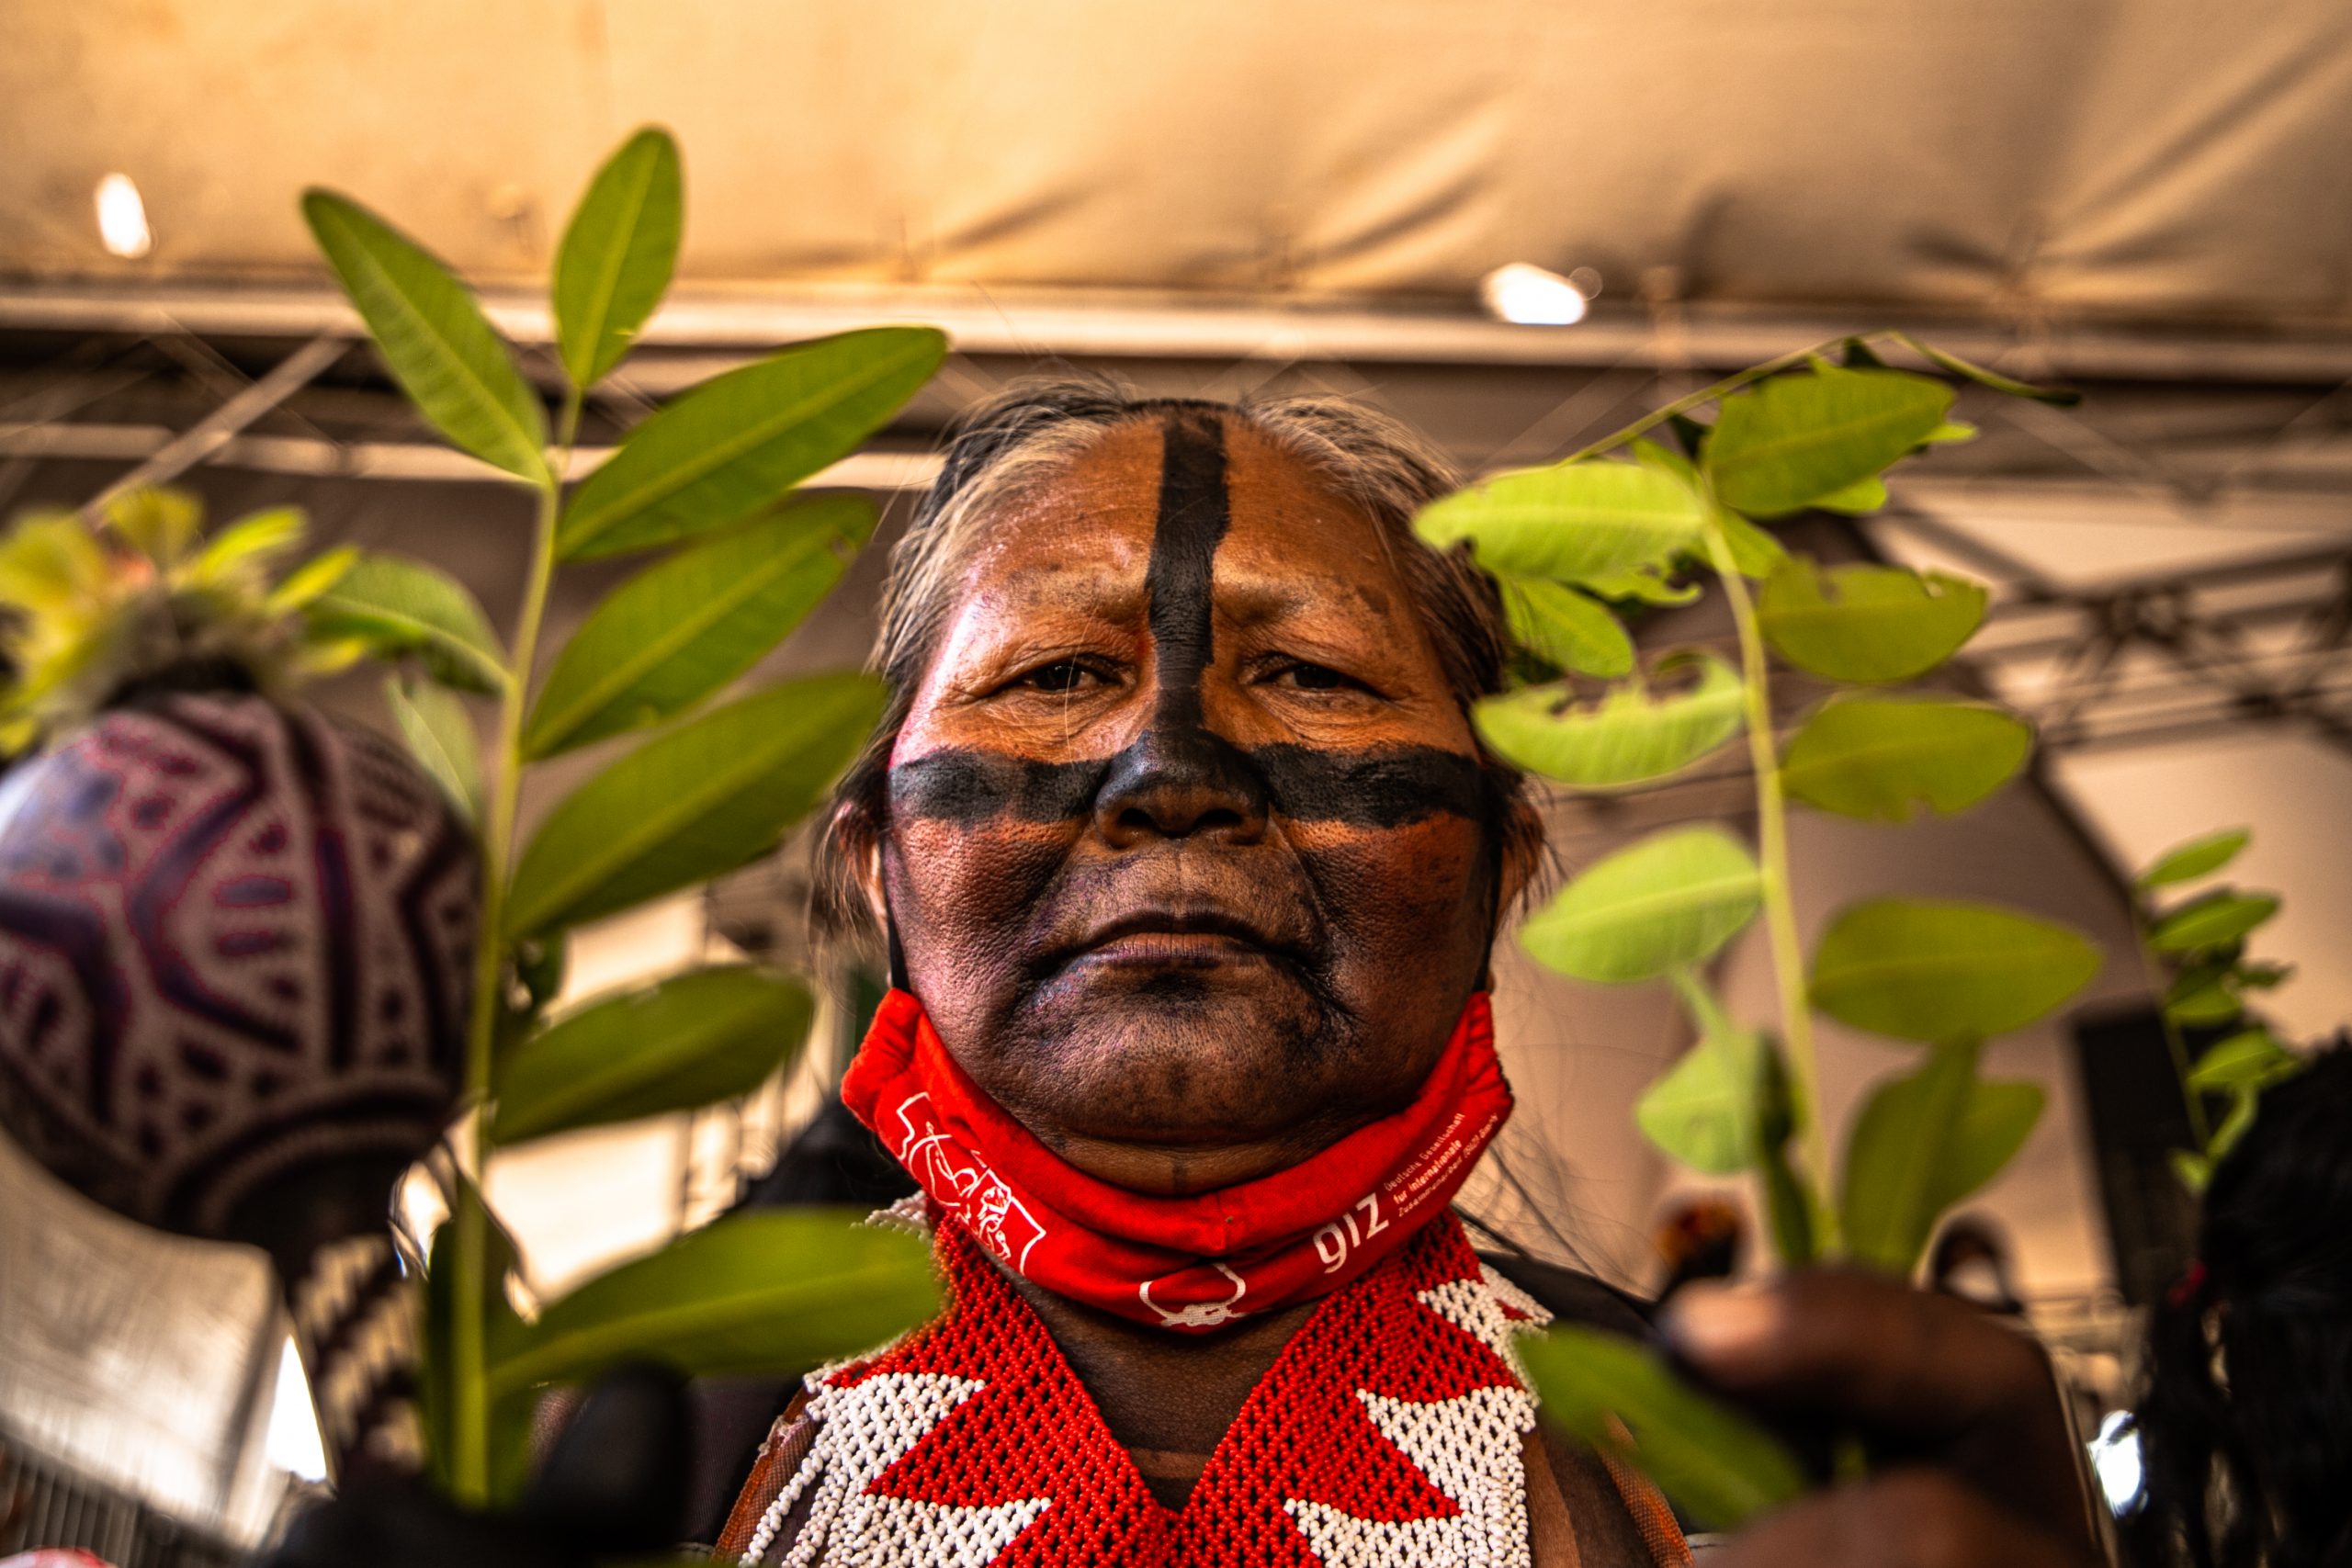 Mujer indígena entre plantas